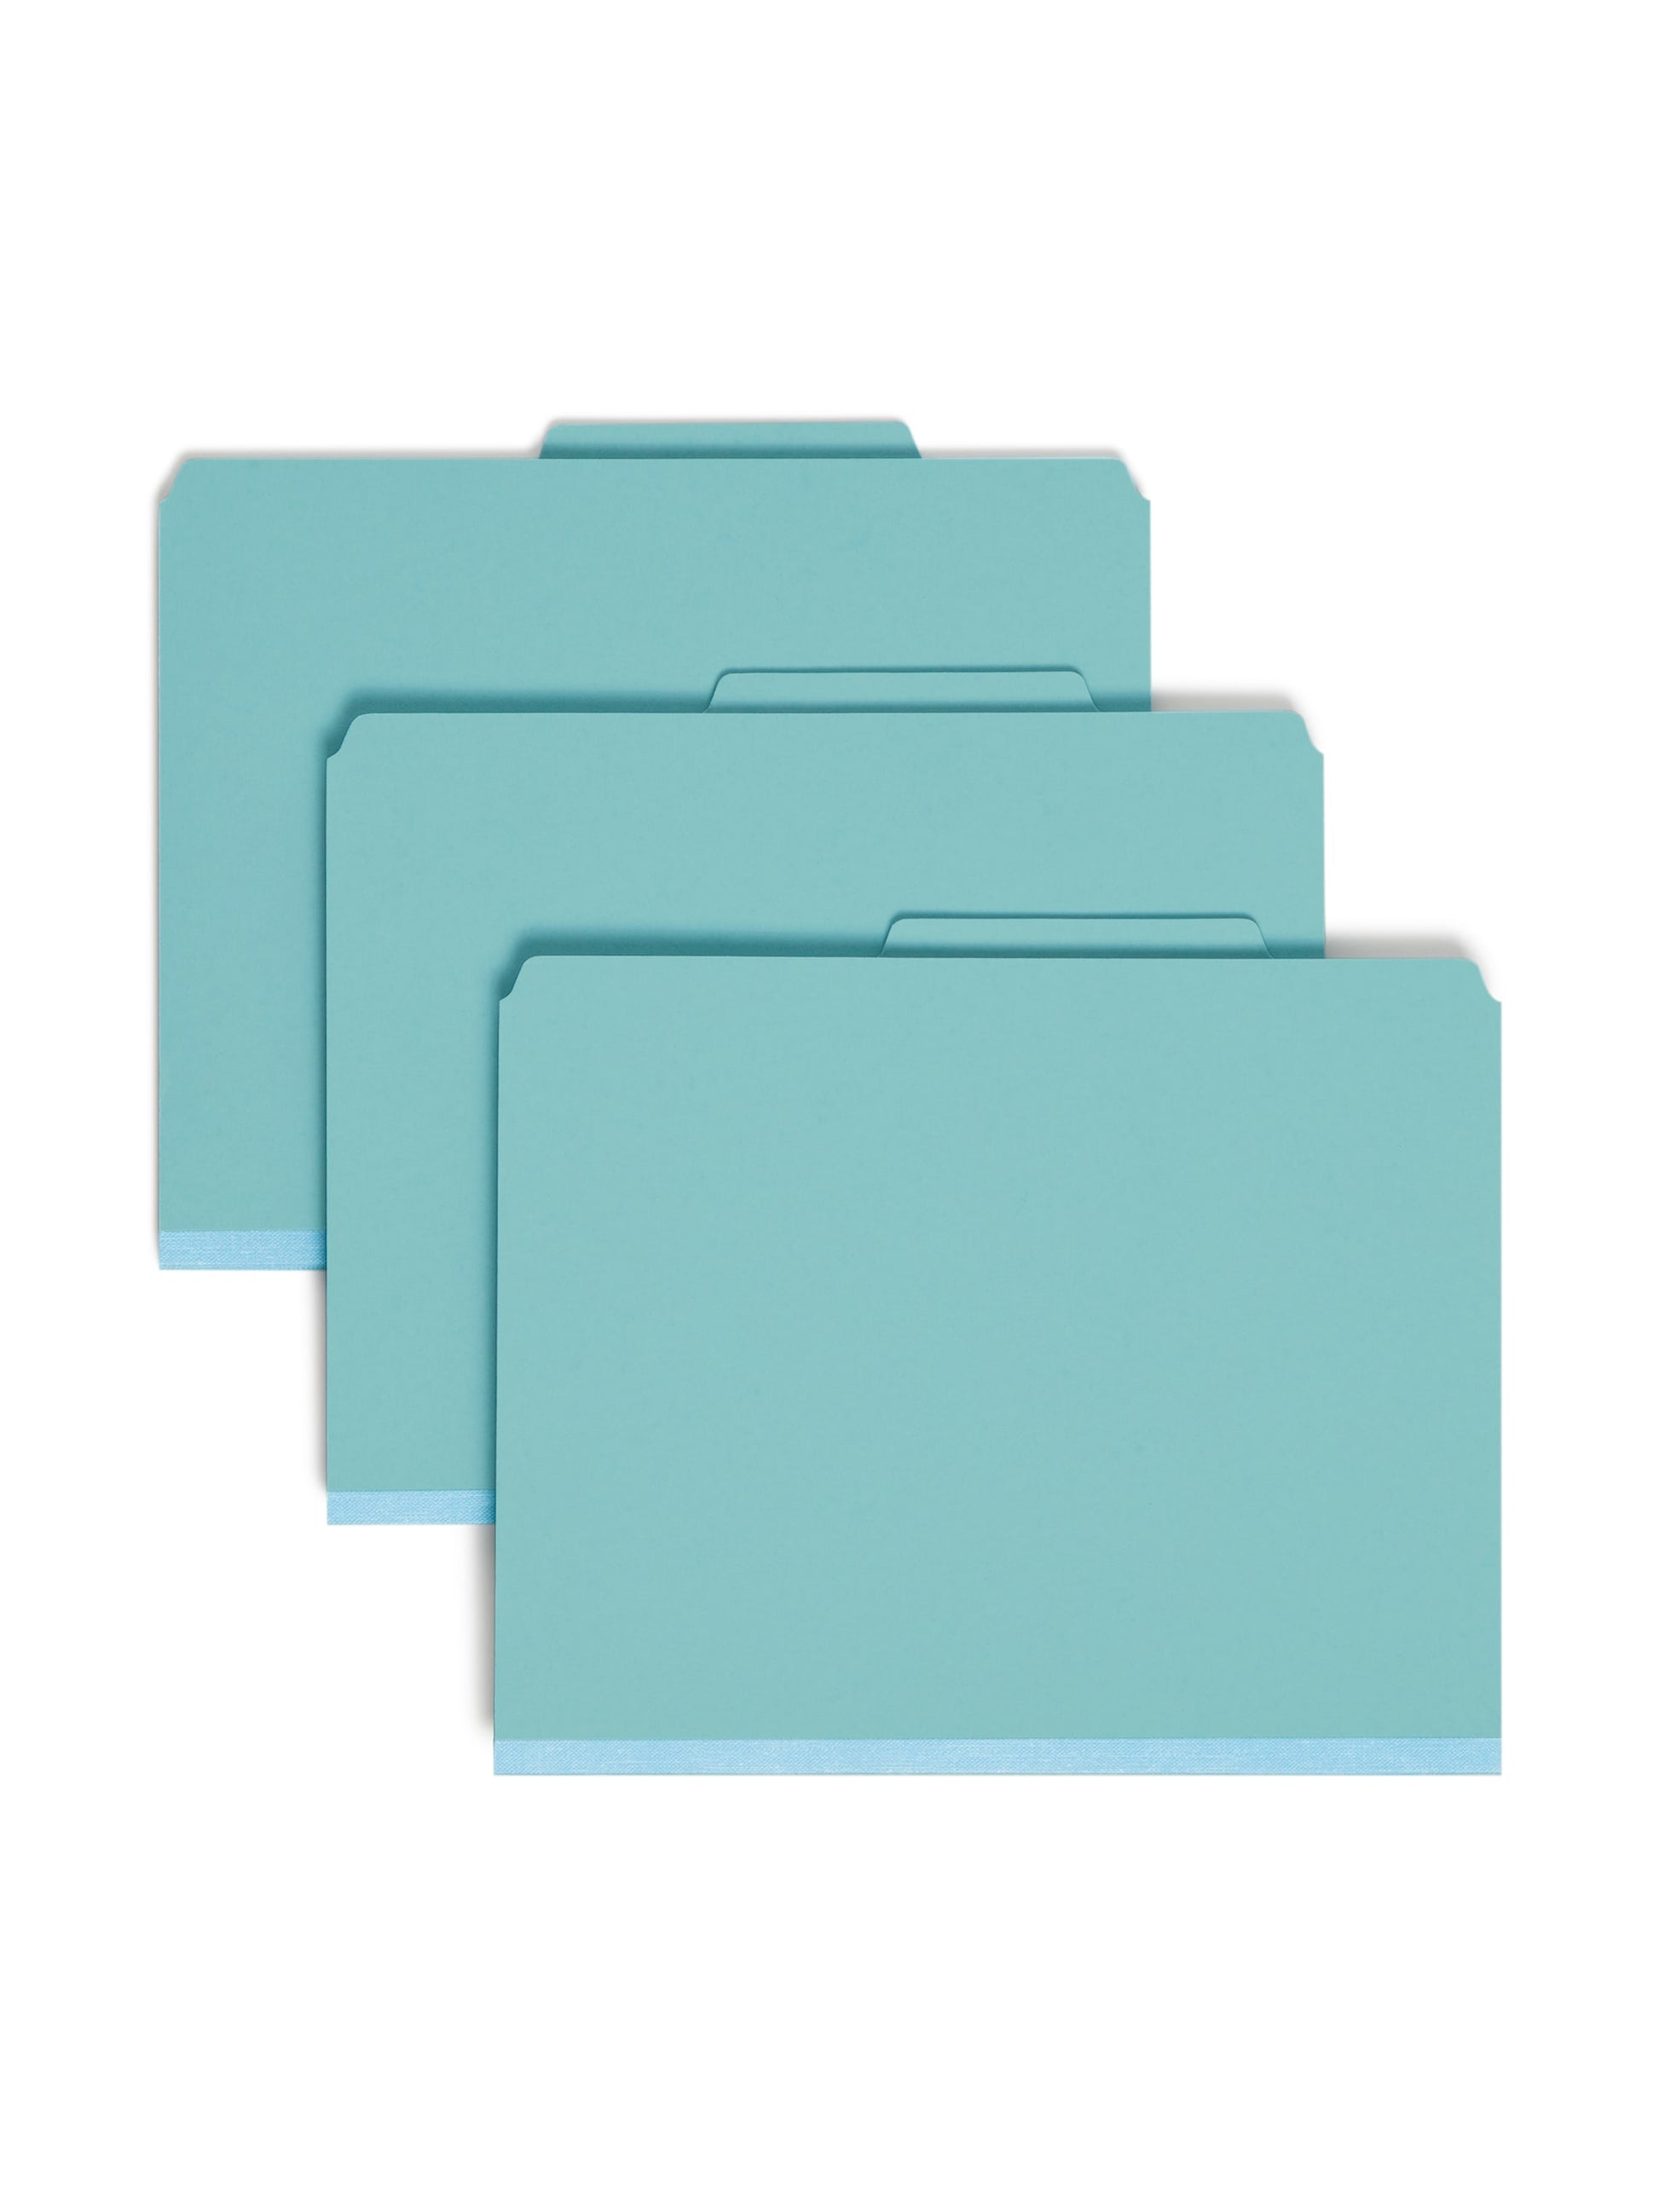 SafeSHIELD® Pressboard Classification File Folders, 1 Divider, 2 inch Expansion, Blue Color, Letter Size, Set of 0, 30086486137301